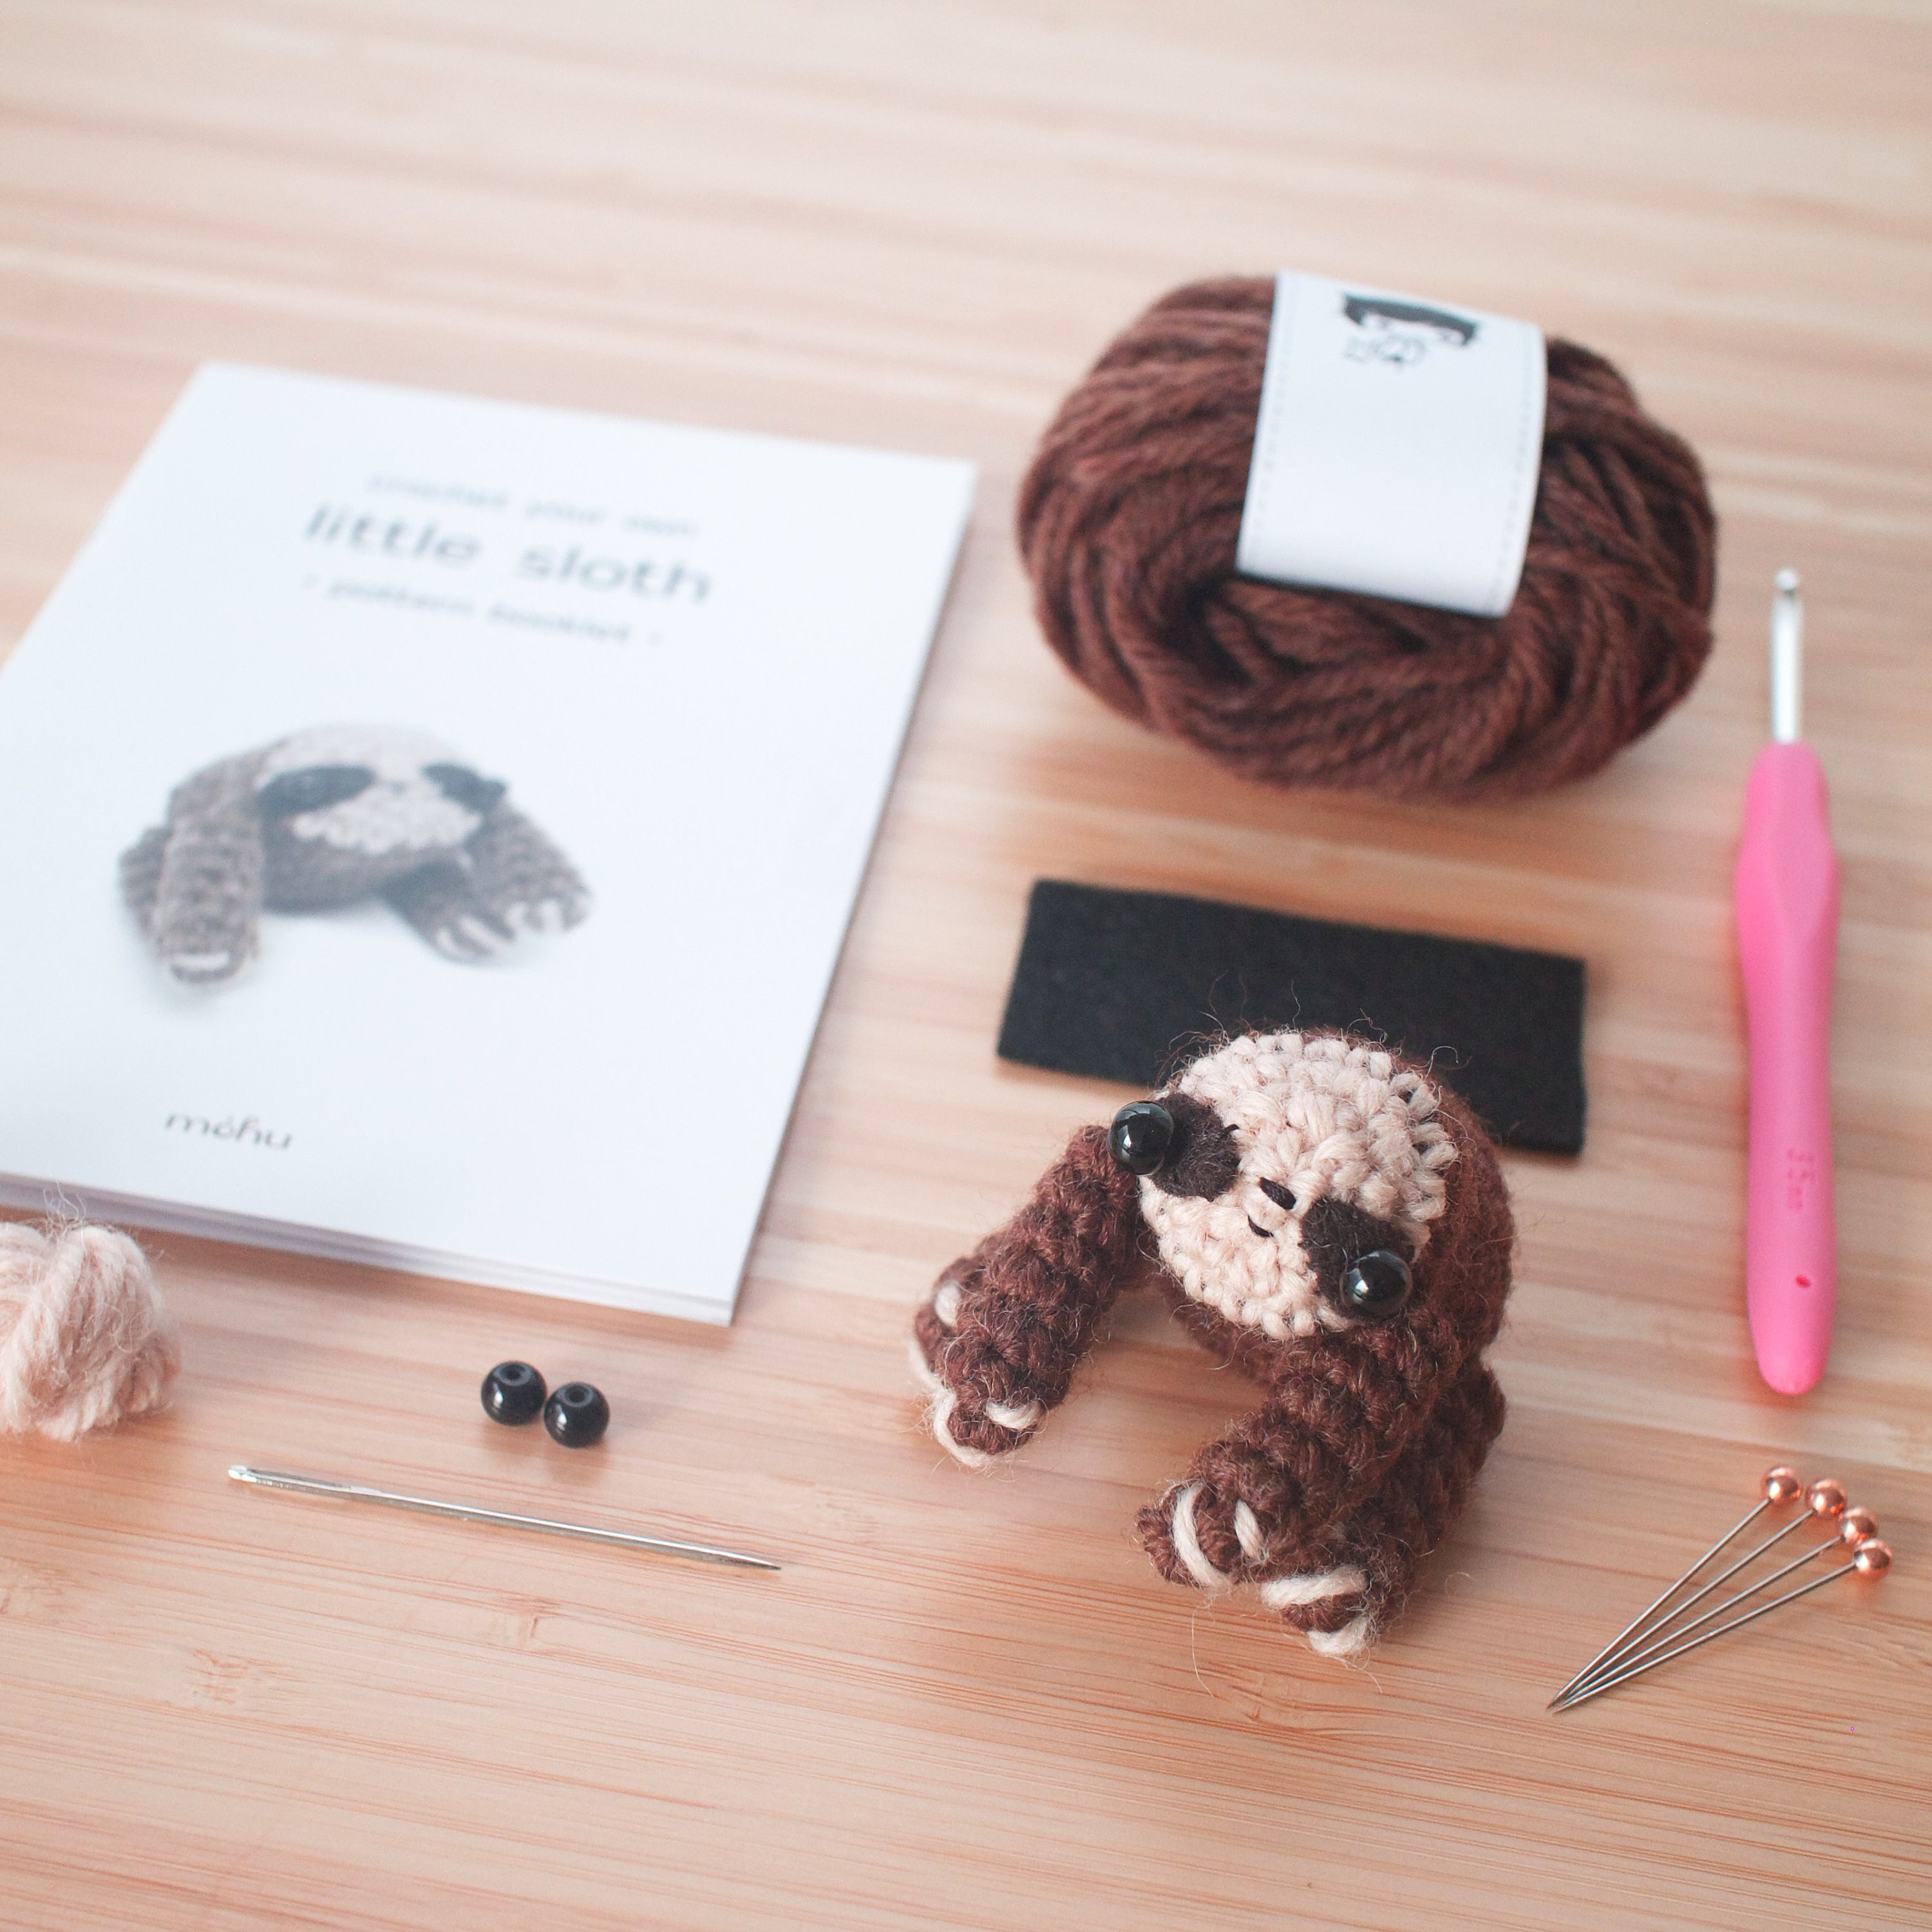 Sloth Crochet Kit for Beginners with Yarns Crochet Hooks Crochet Kit Adults  Gift